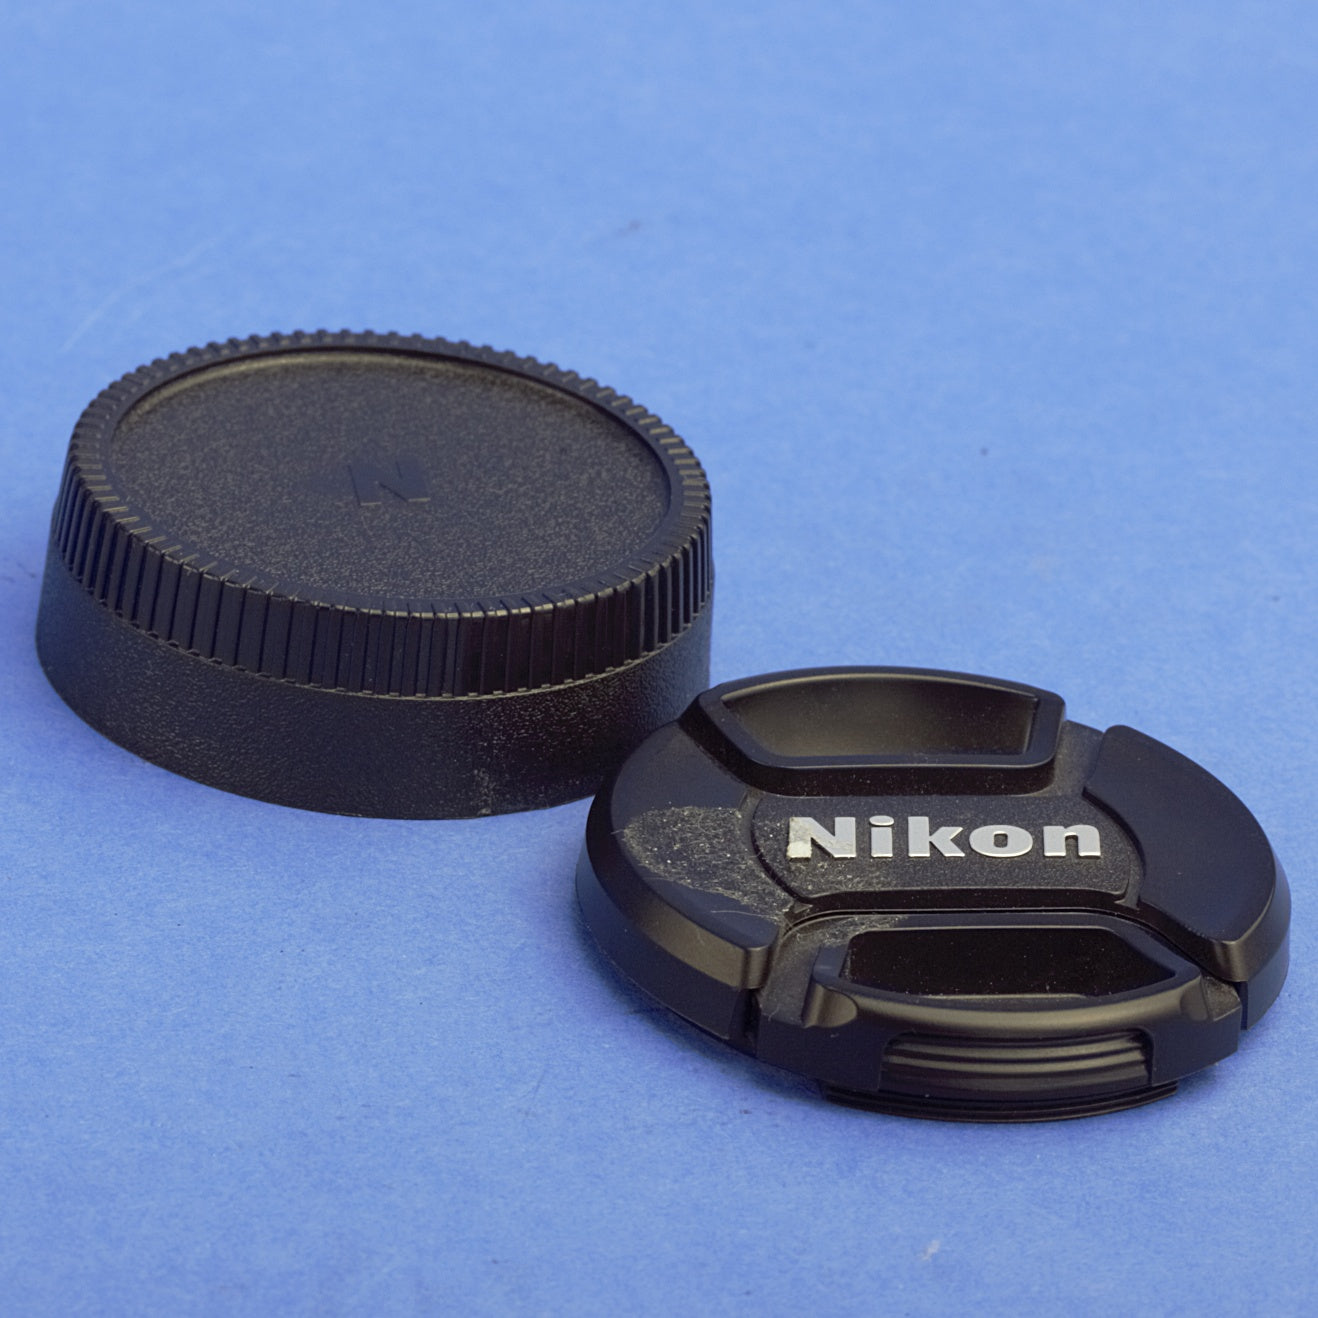 Nikon Nikkor 35mm F2 Ai Lens